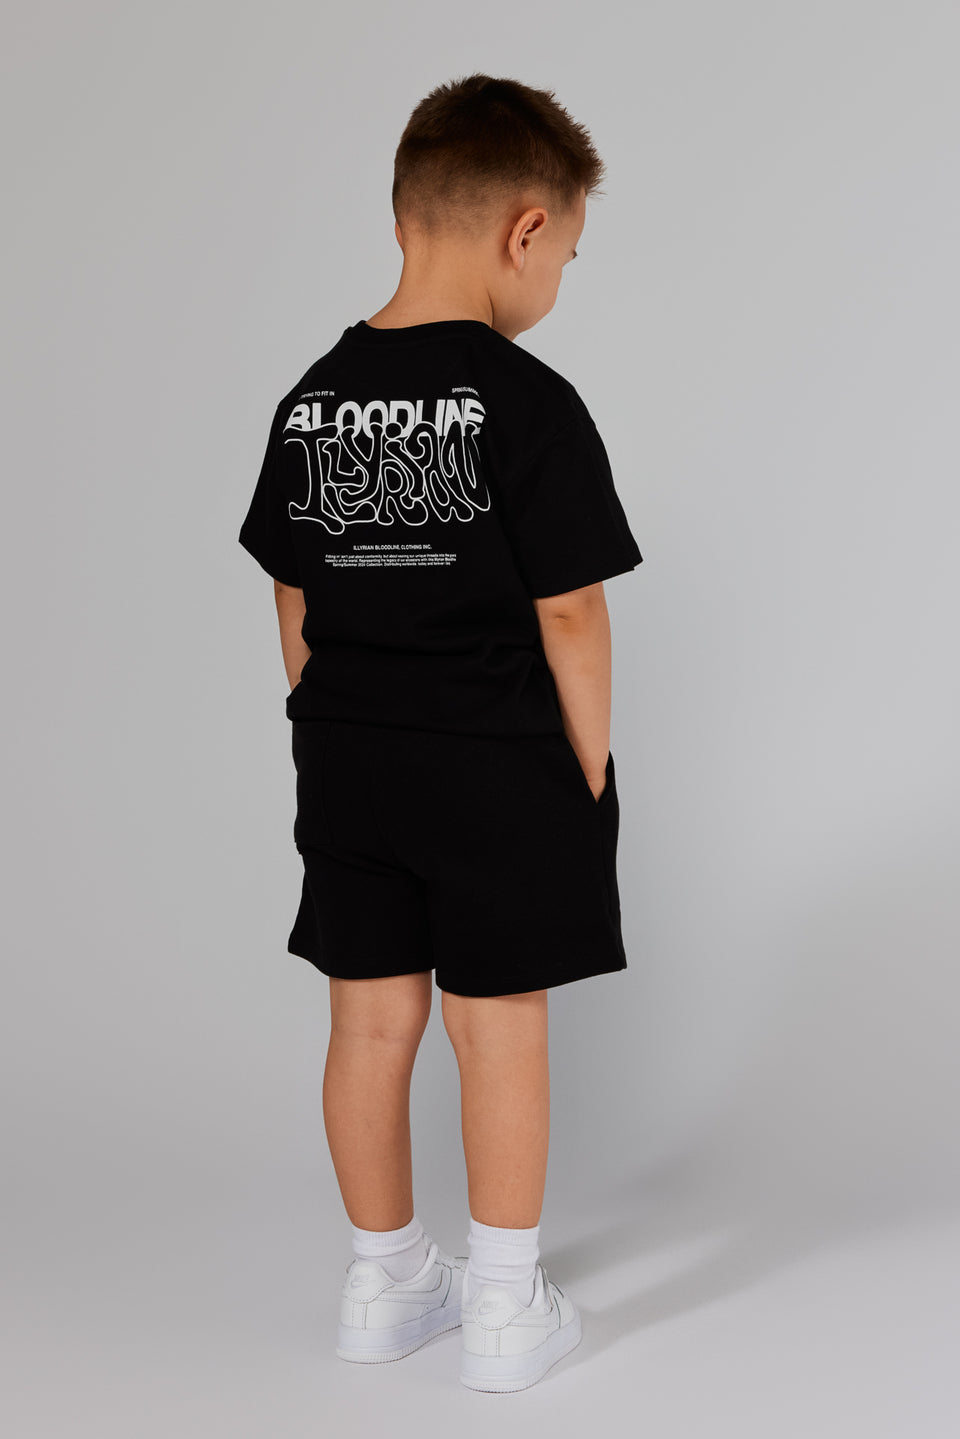 IBL Wavy T-shirt Kids - Black